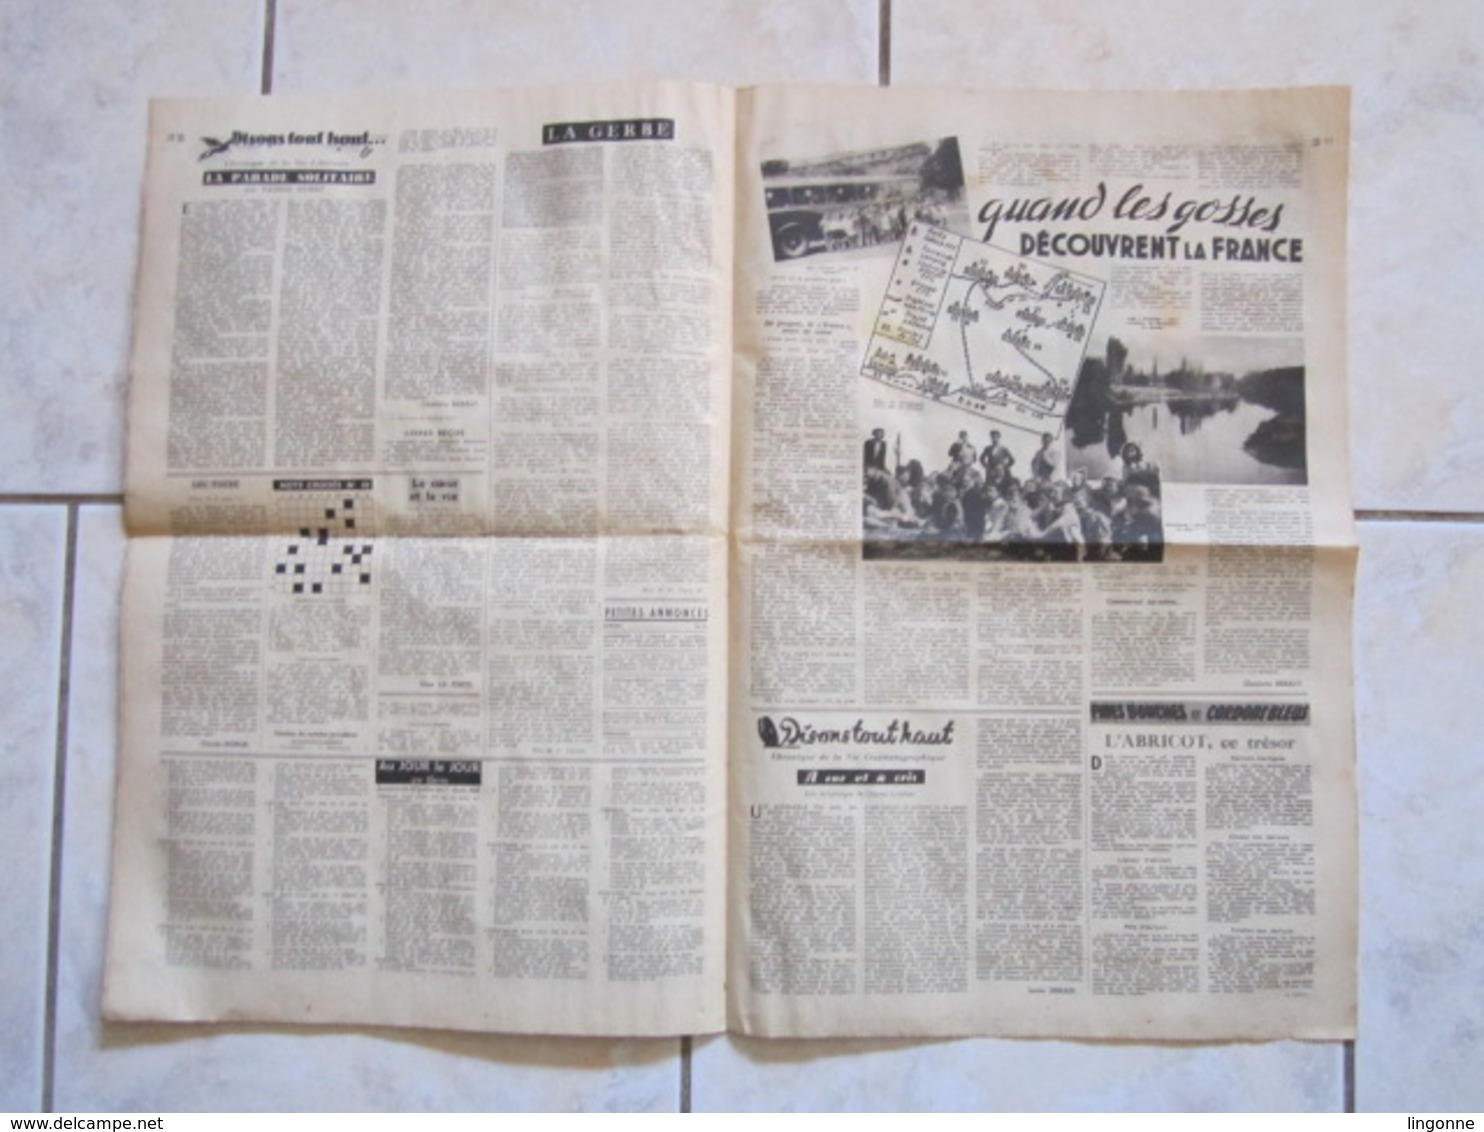 RARE LE JOURNAL de la FEMME Hebdomadaire interdit sous l'Occupation Directrice : Raymonde MACHARD 21 JUILLET 1948